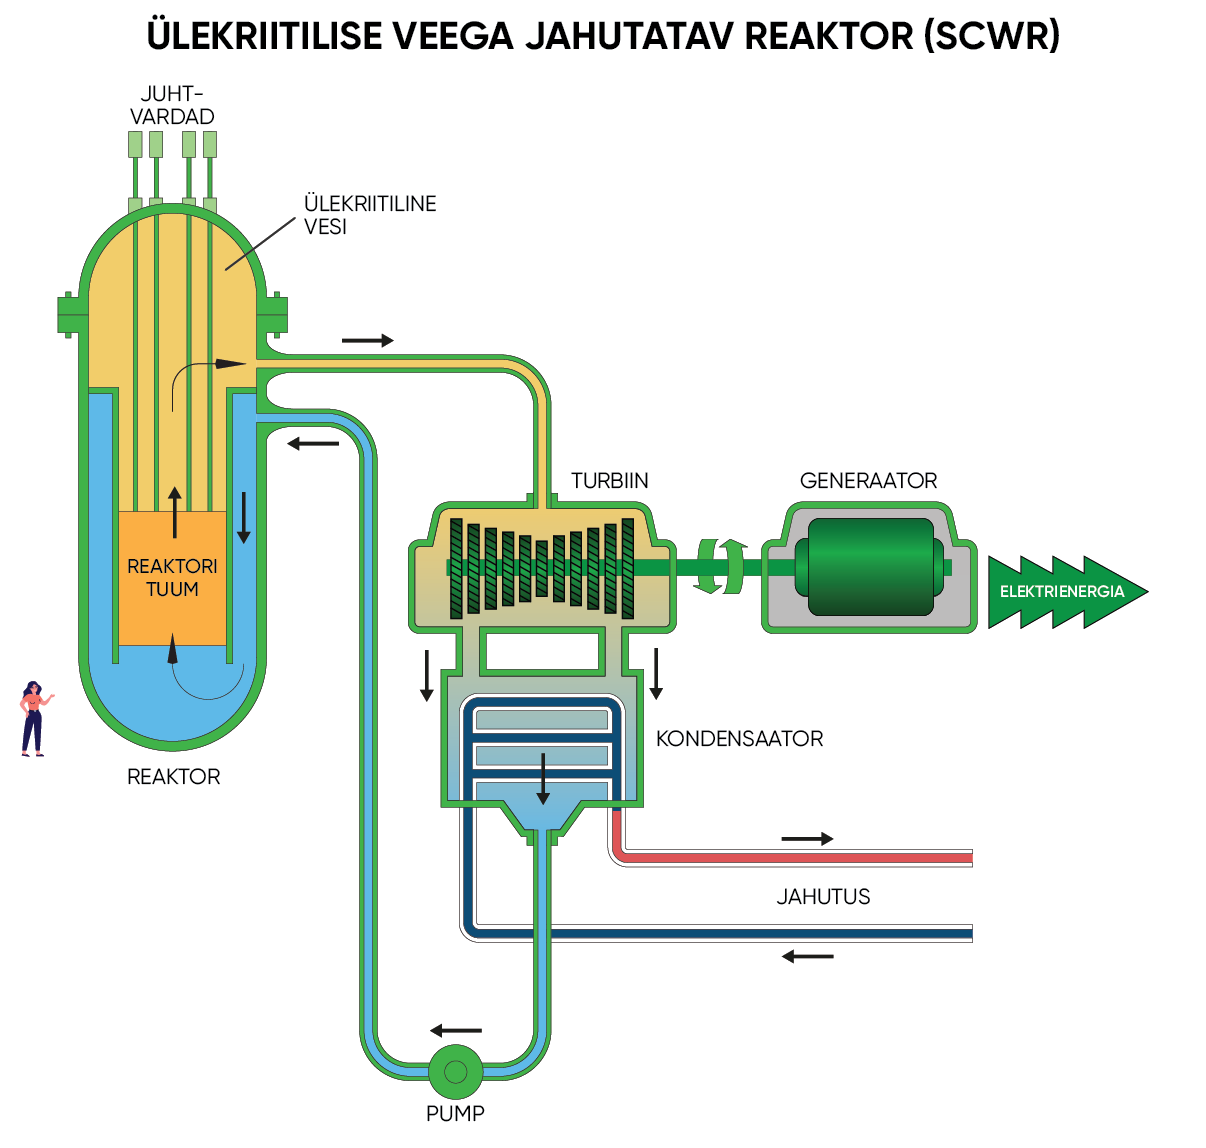 Ülekriitilise veega jahutatav reaktor (SCWR)